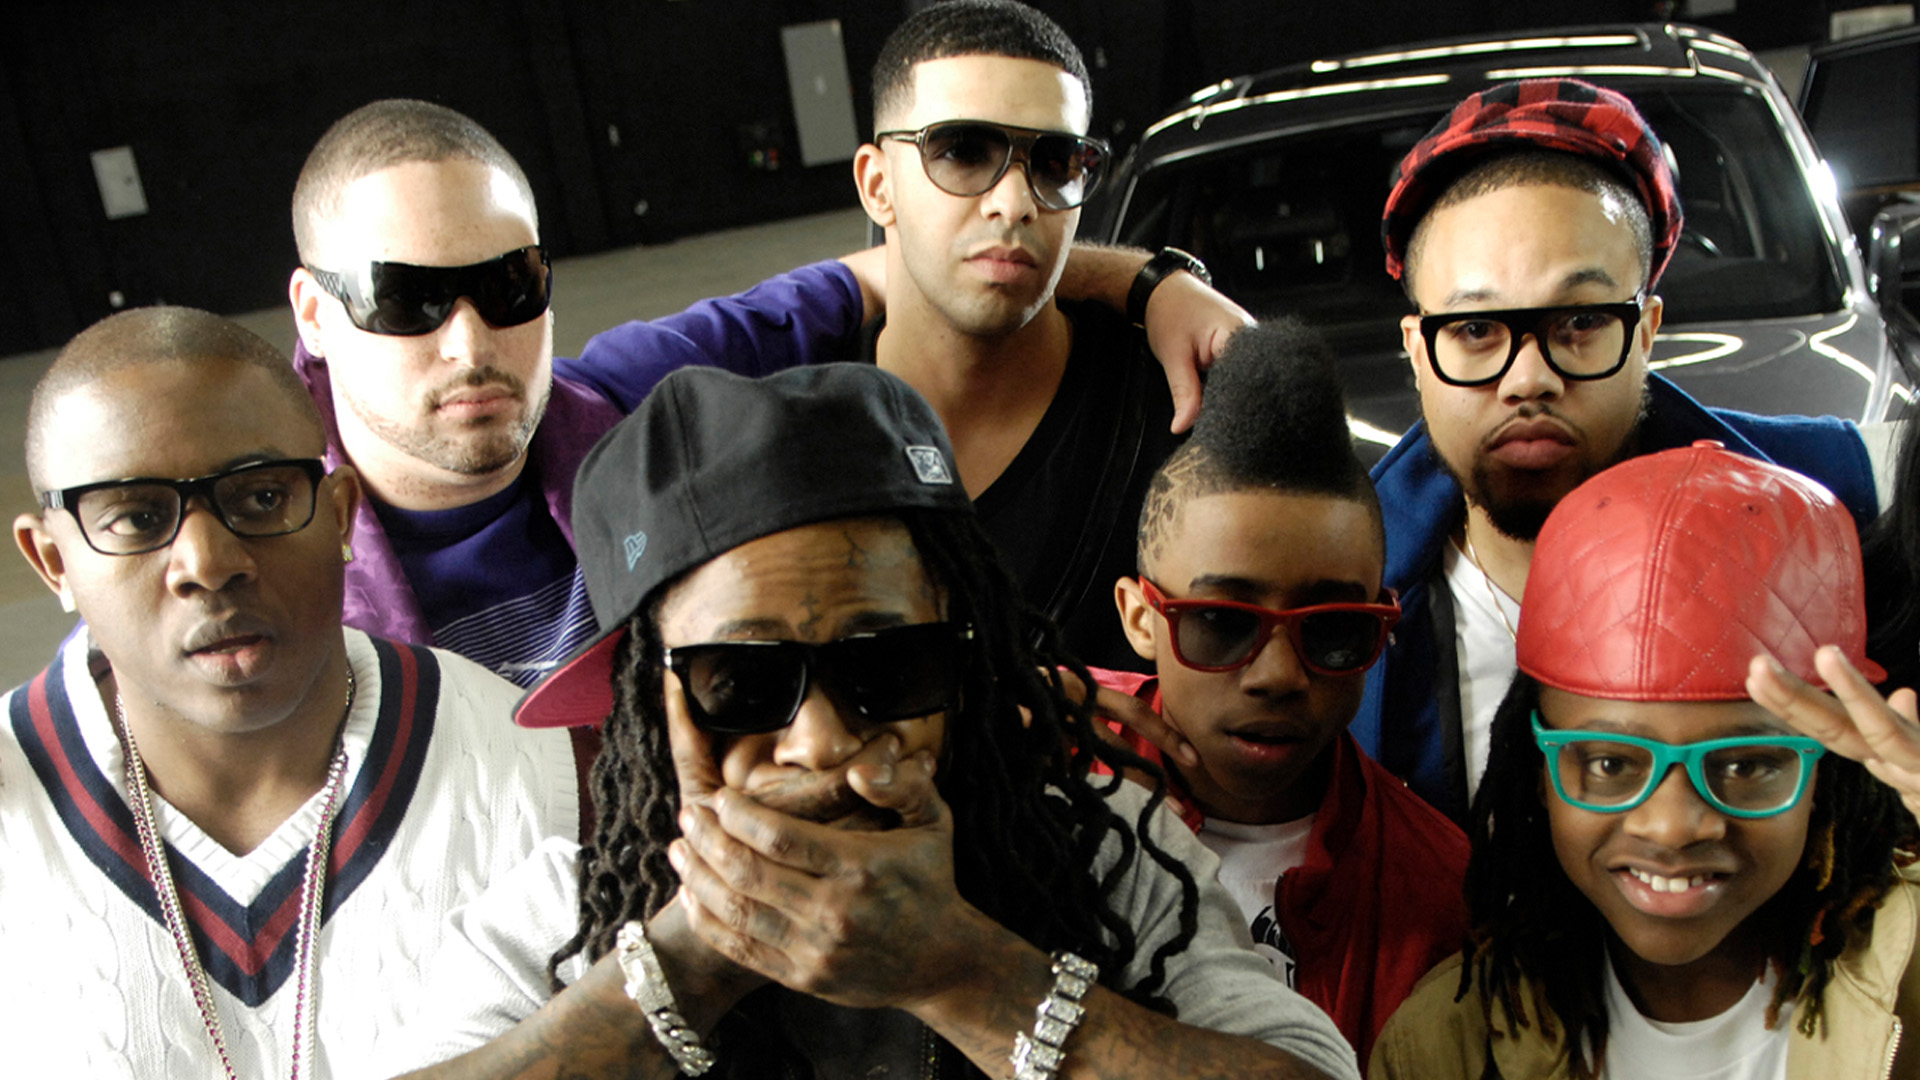 Bed Rock (Ft. Lil Wayne, Gudda Gudda, Nicki Minaj, Drake, Tyga, Jae Millz & Lloyd) av Young Money